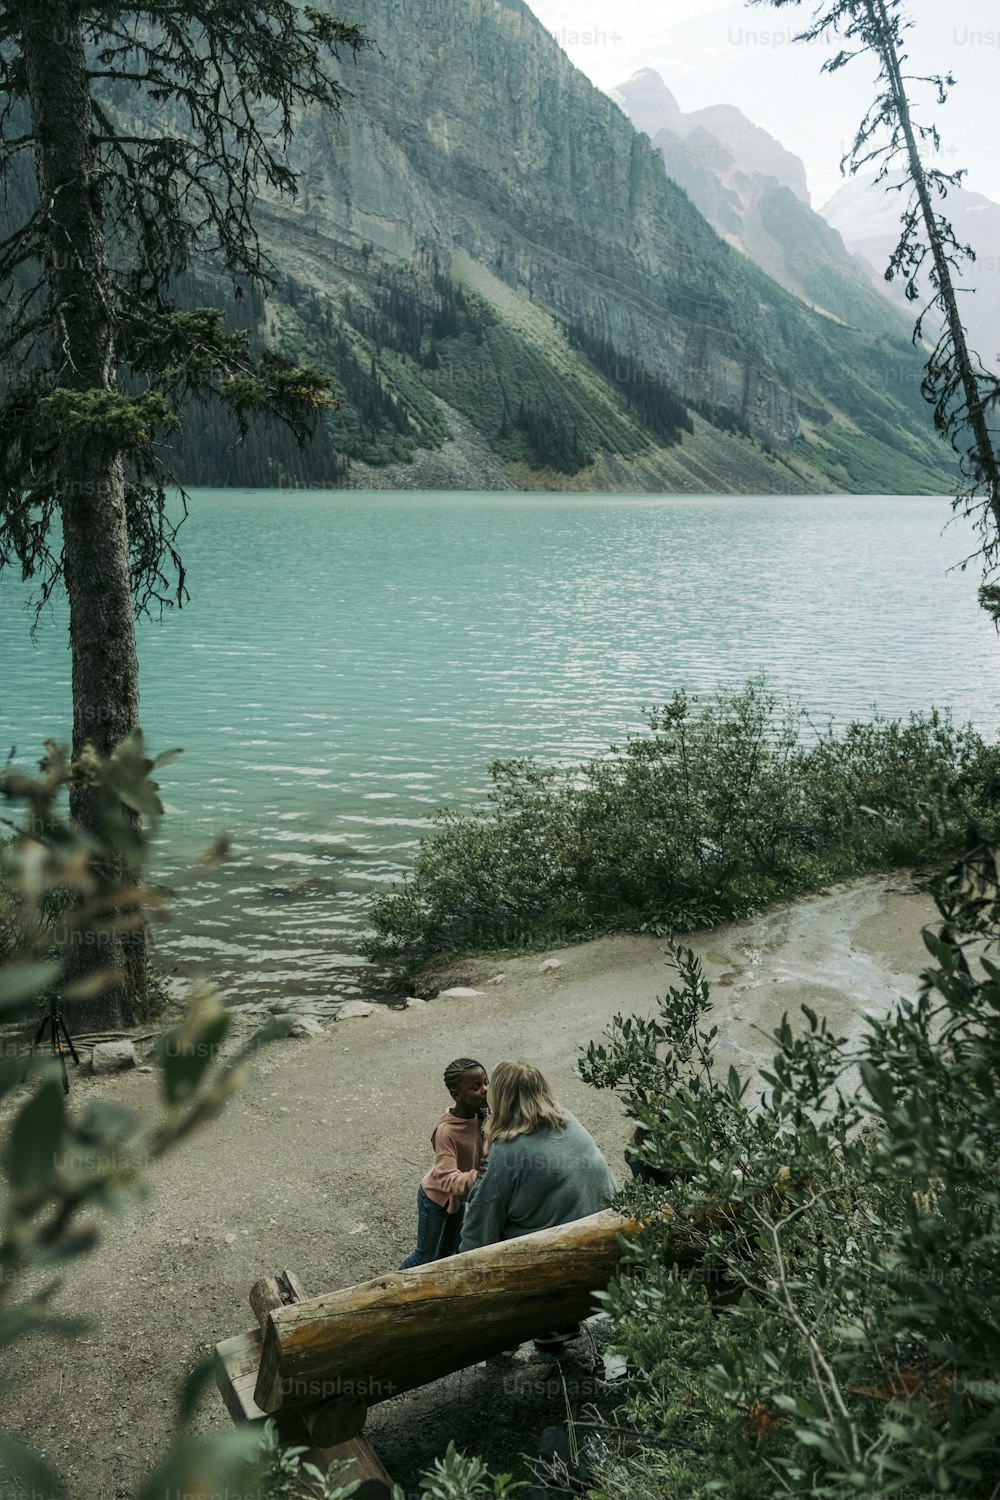 호수 옆 벤치에 앉아 있는 남자와 여자